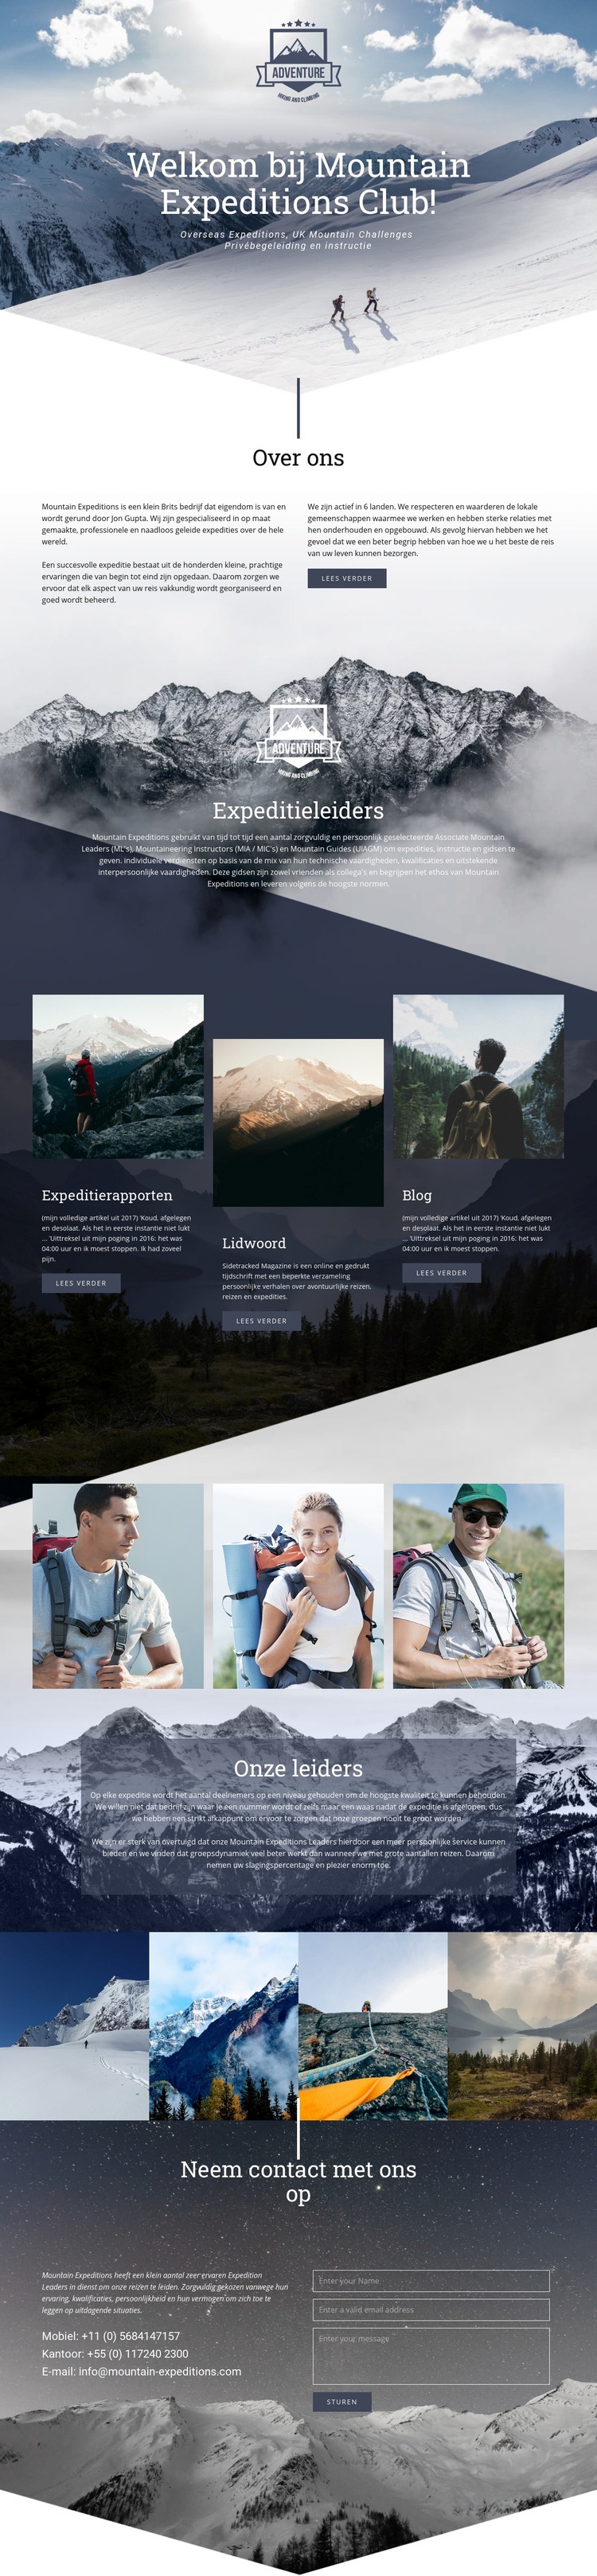 Extreme bergexpeditie Website ontwerp